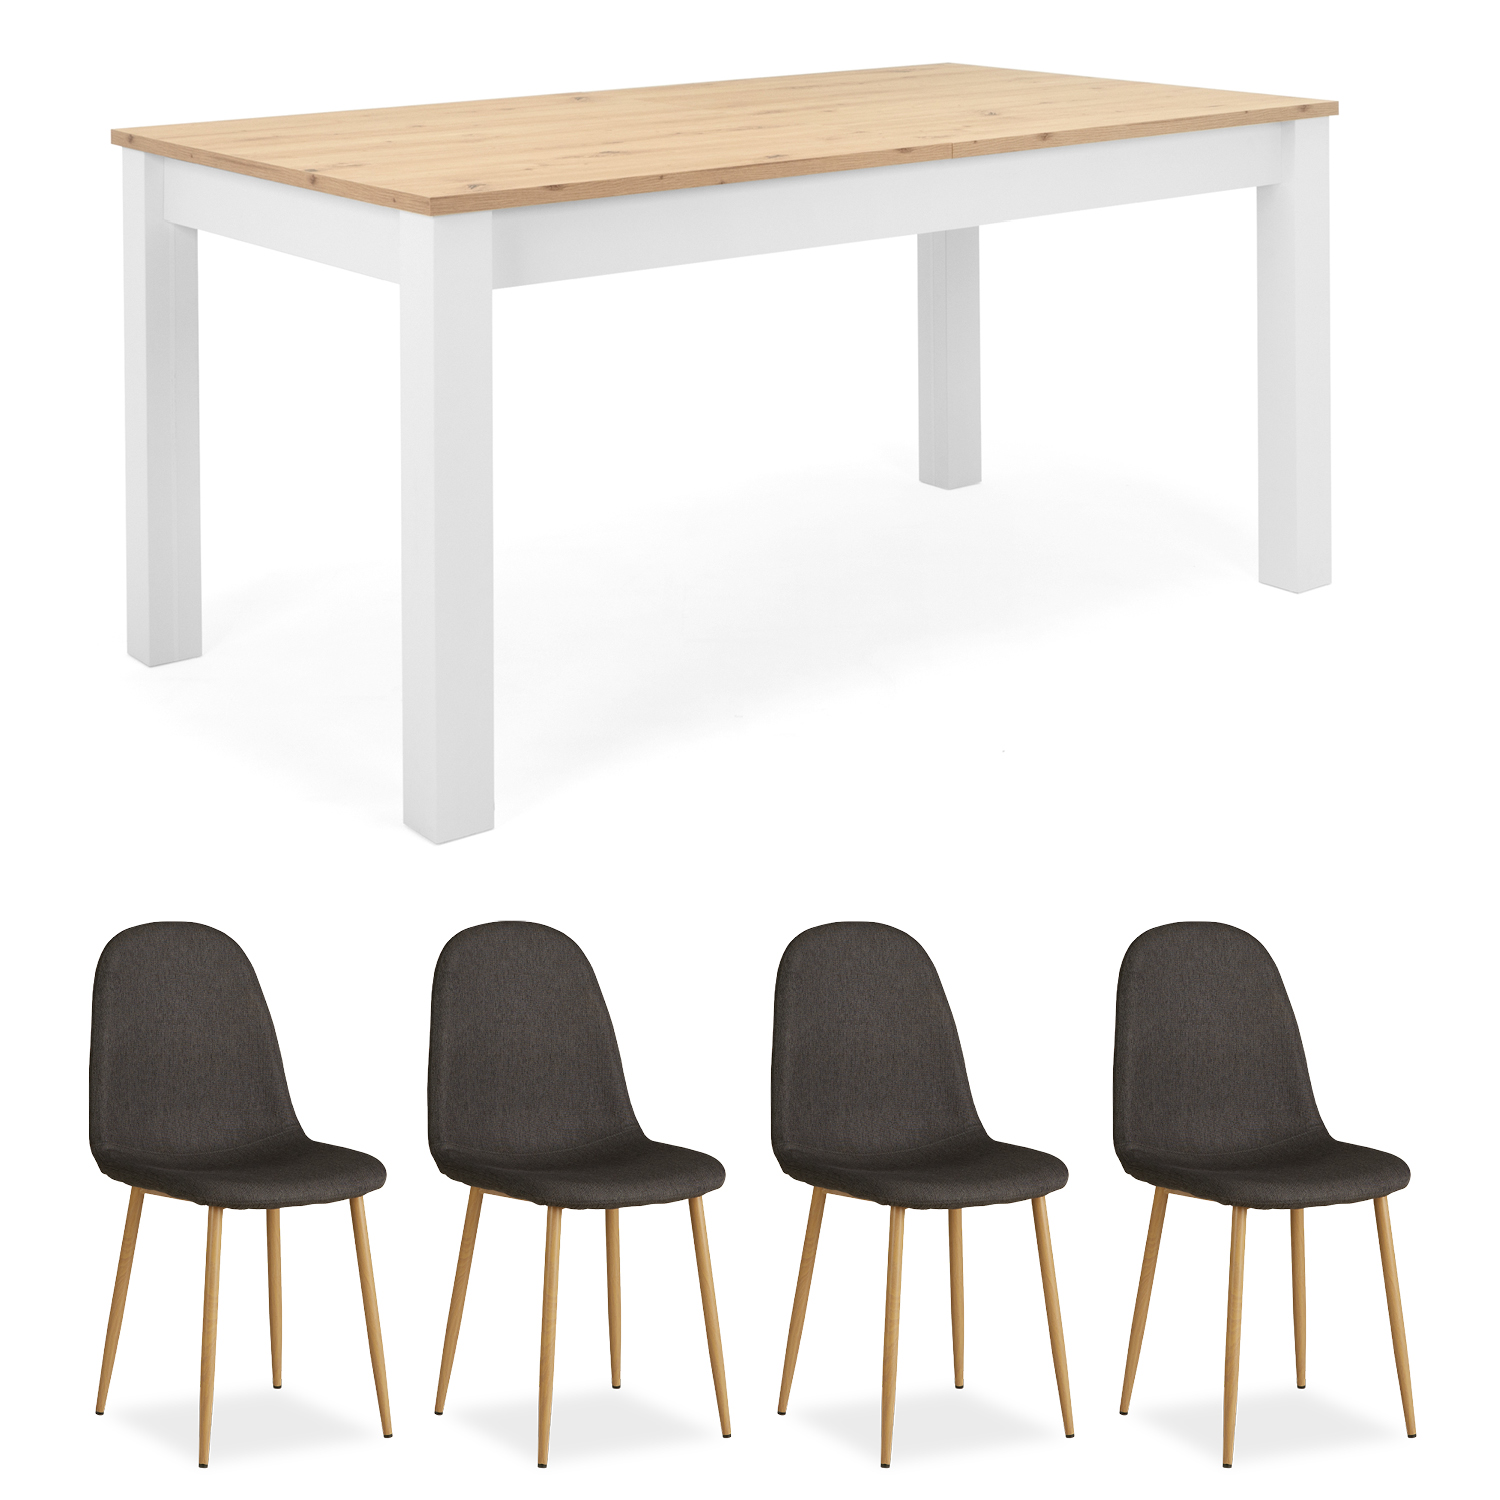 Essgruppe mit 4 Stühlen Esstisch ausziehbar Esszimmertisch Weiß Holztisch Polsterstühle Anthrazit